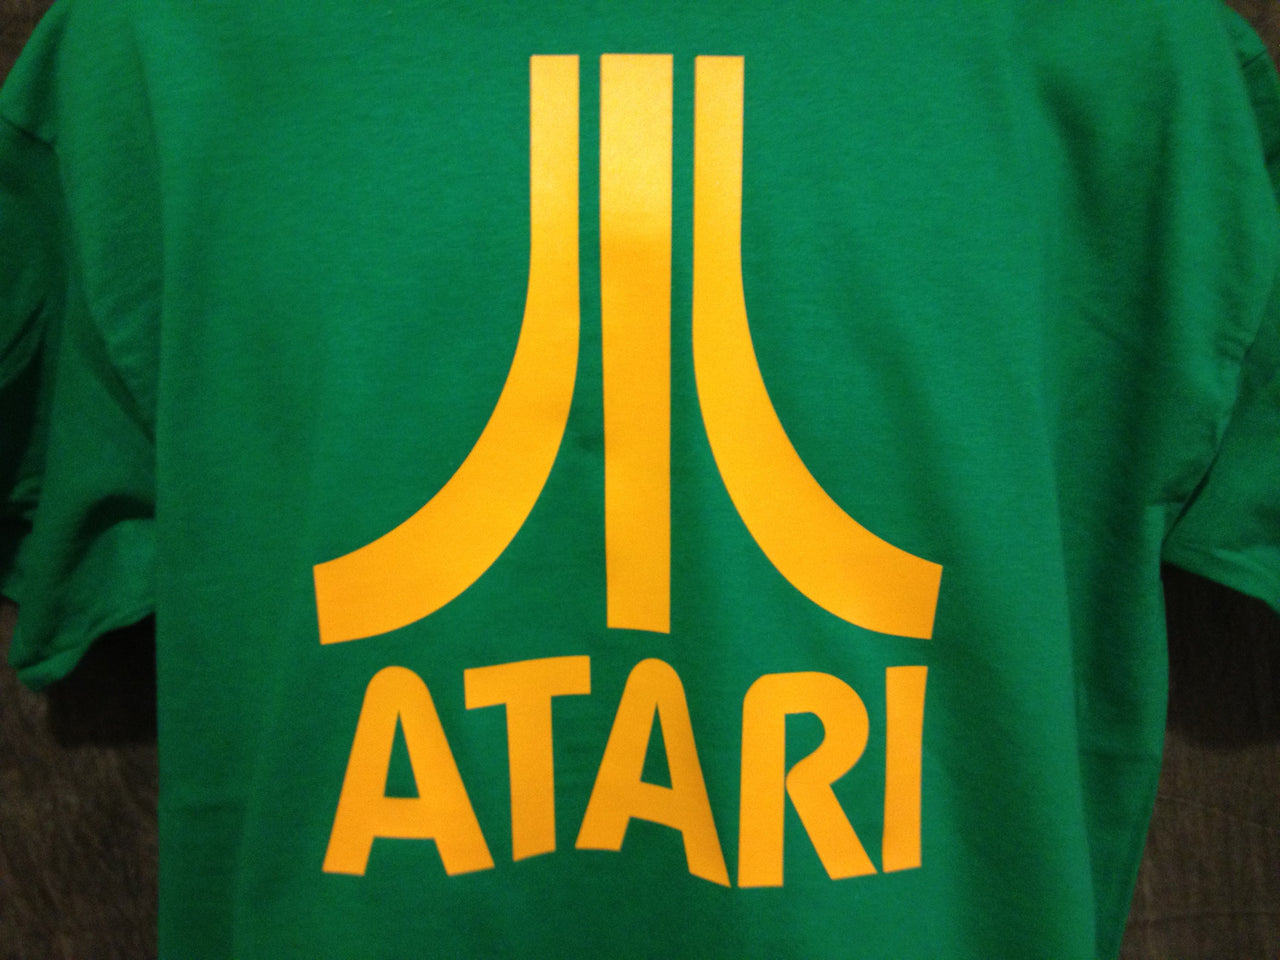 Atari Logo Tshirt: Green With Yellow Print - TshirtNow.net - 2